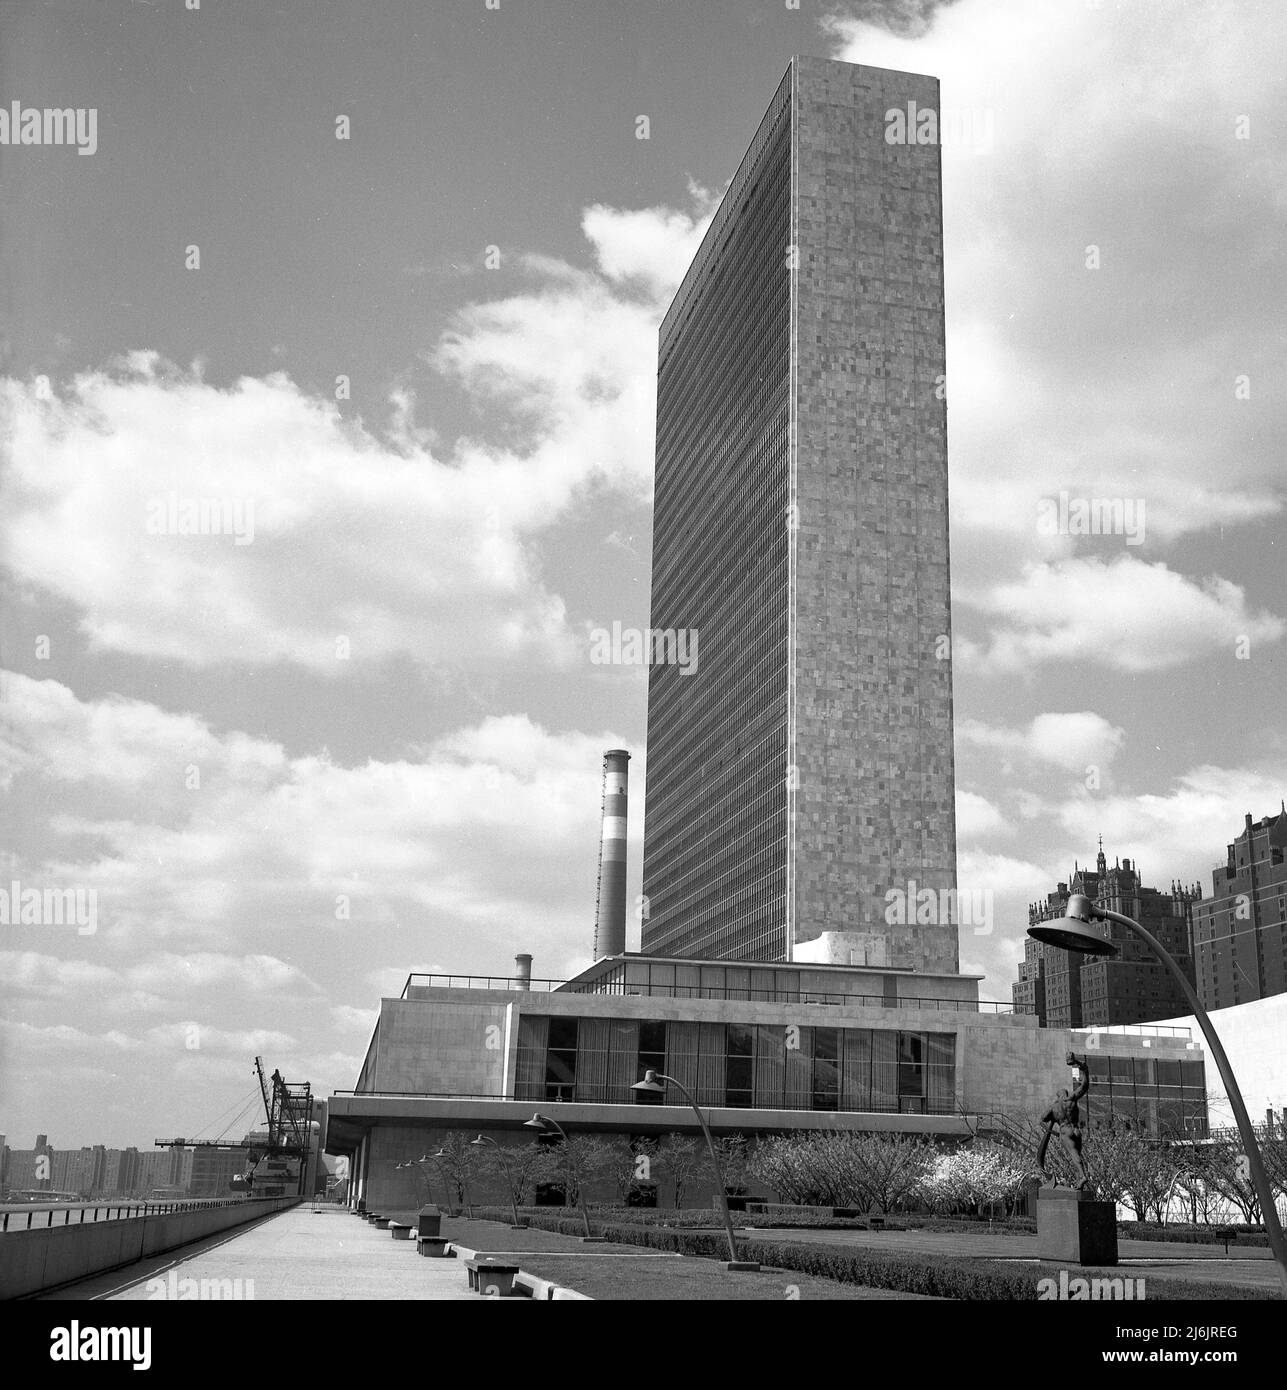 1950s, historique, le siège des Nations Unies, New York City, NY, USA. Haut de 39 étages, le grand gratte-ciel est le bâtiment du Secrétariat qui a été conçu par Oscar Niemeyer et le Corbusier et achevé en 1950. Plusieurs autres bâtiments constituent le complexe de l'ONU, qui se trouve dans la région de Turtle Bay à Manhattan, sur une terre surplombant la rivière East. Banque D'Images